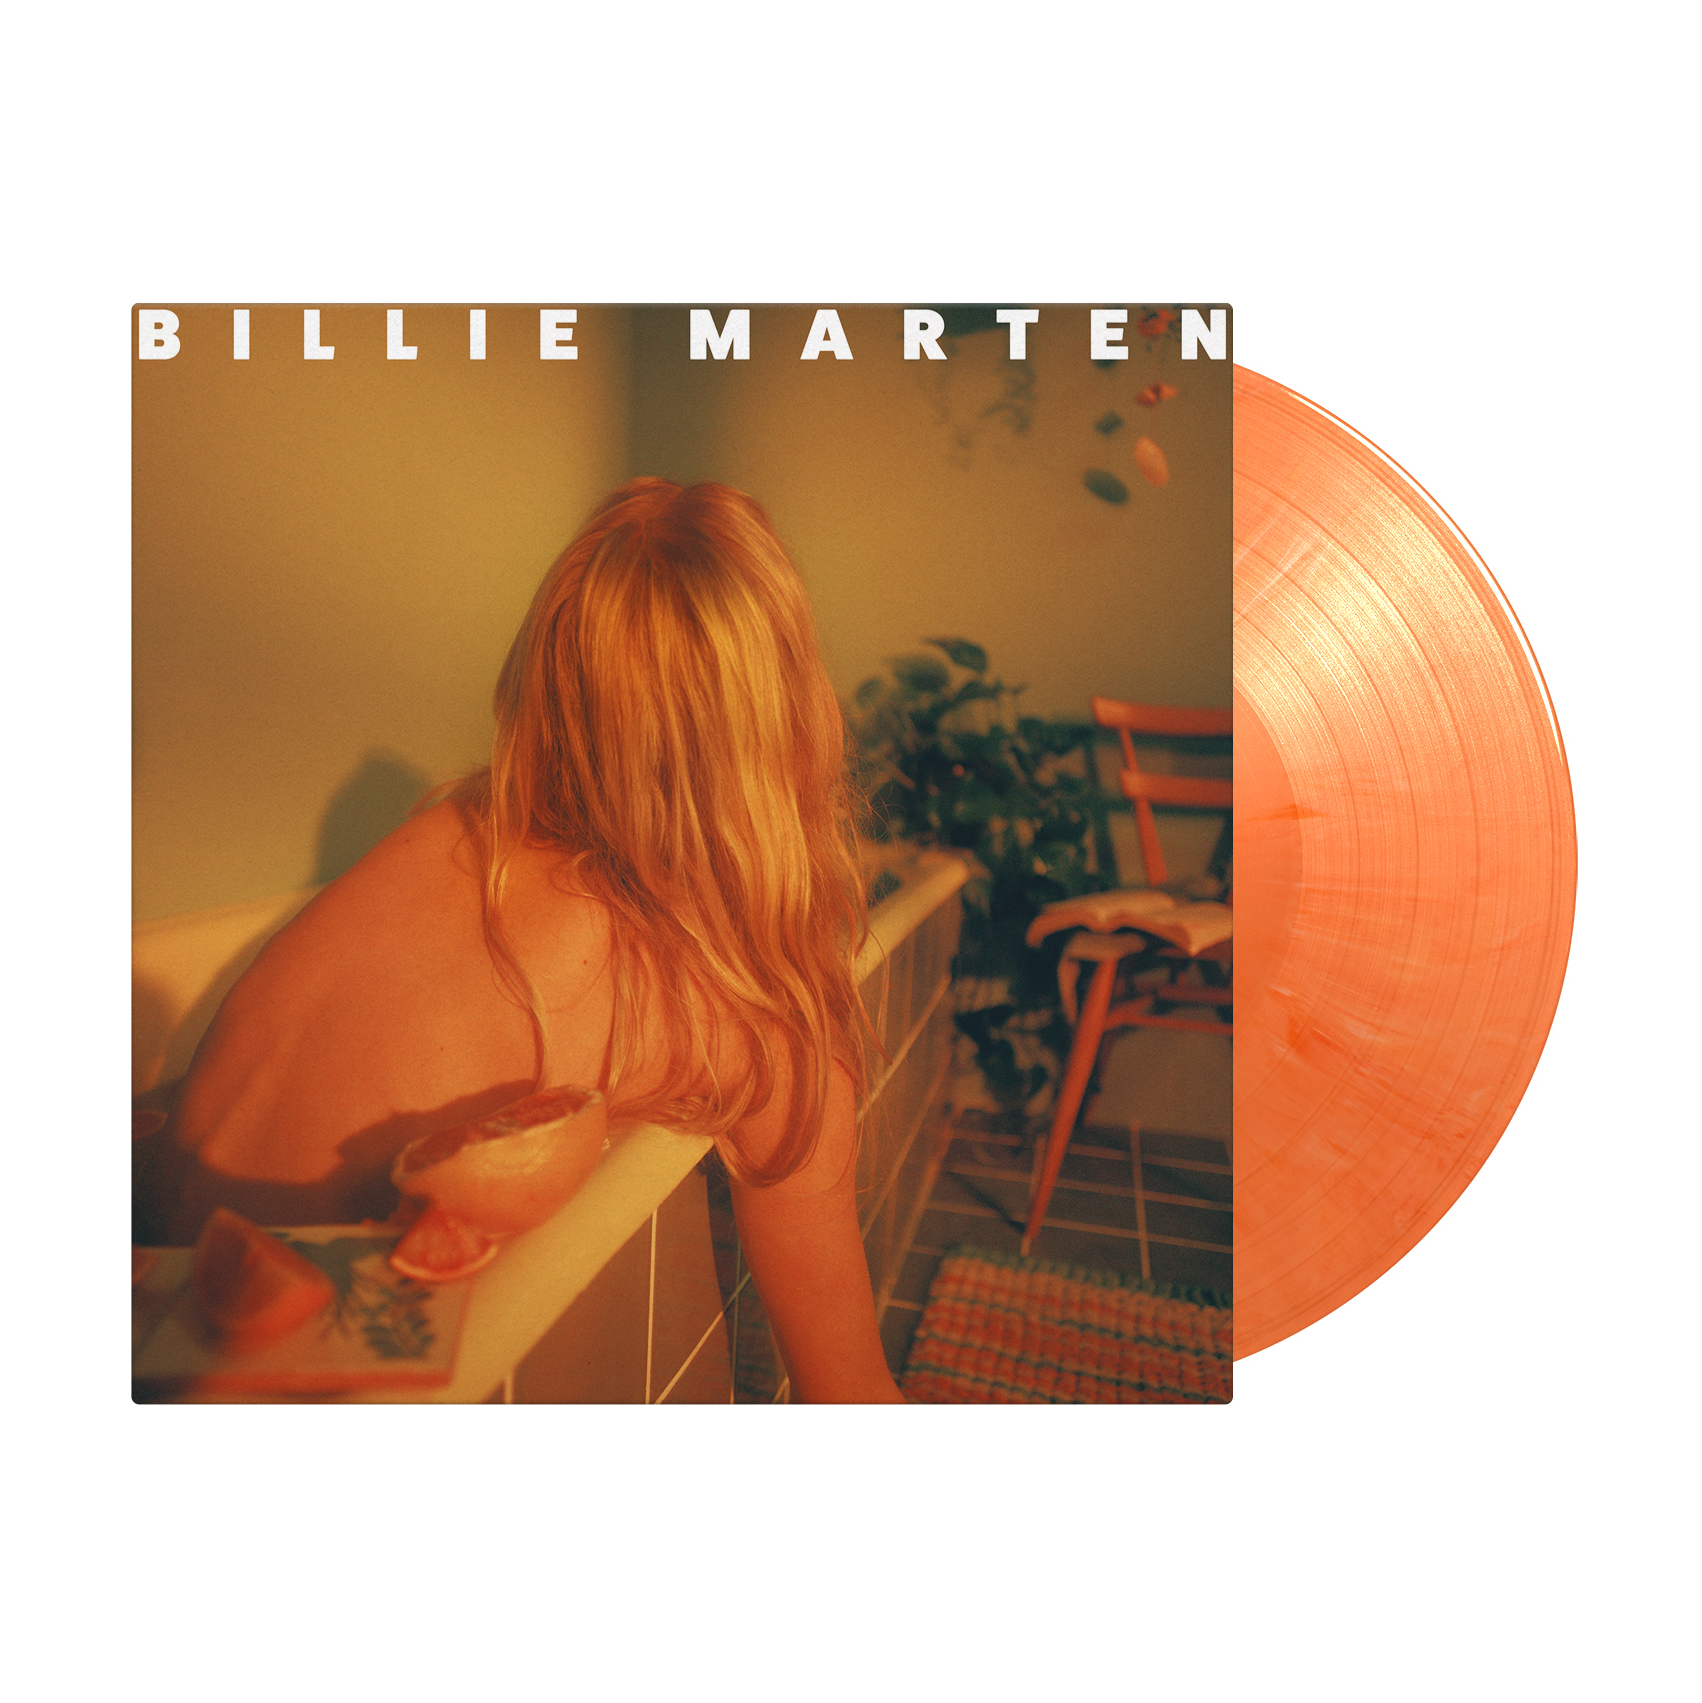 Billie Marten - Feeding Seahorses By Hand: Limited Orange & White Marble Vinyl LP